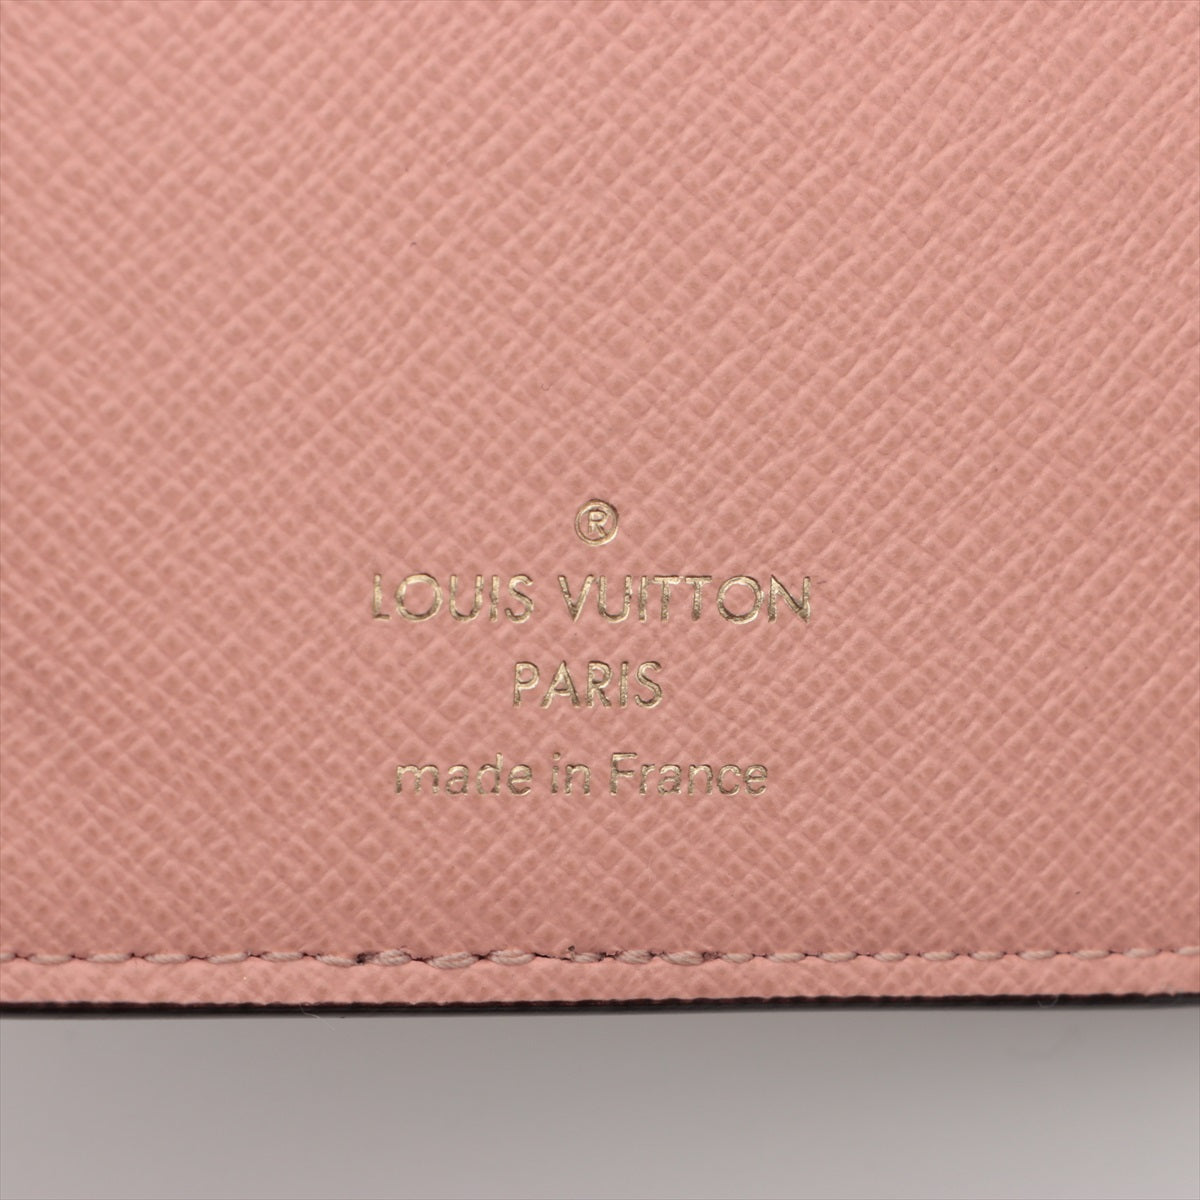 Pre Owned Louis Vuitton Damier Ebene Canvas Juliette Compact Wallet